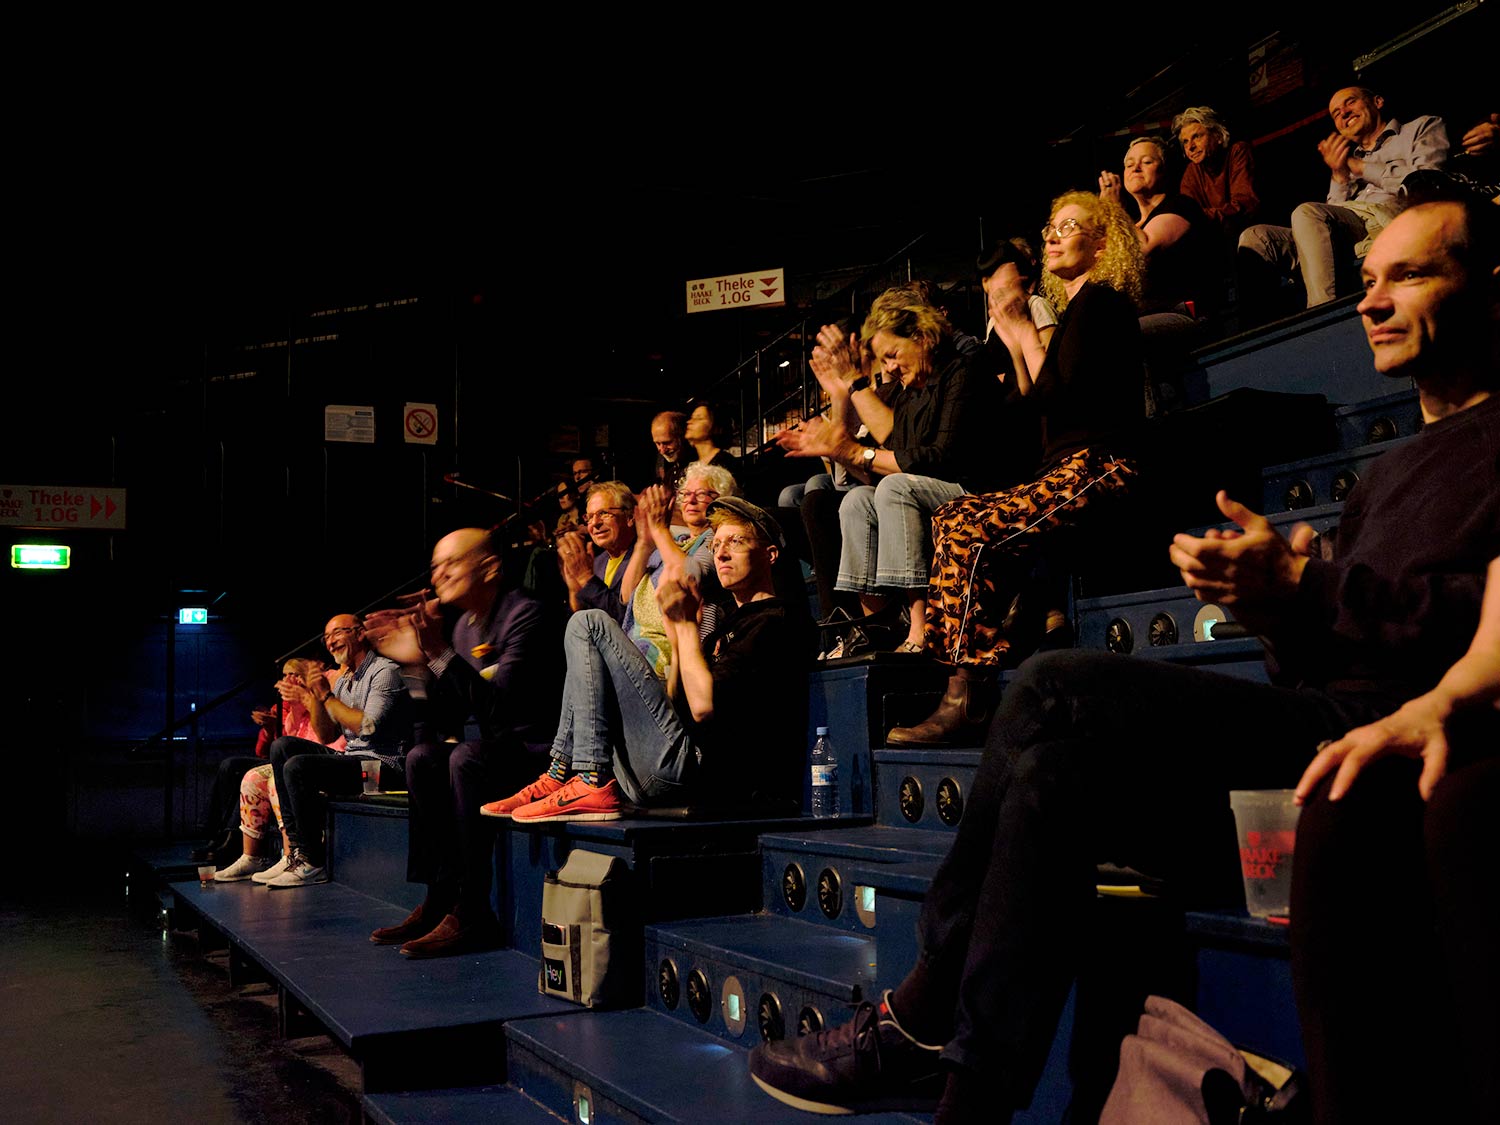 Publikum bei Abendkonzert Generation Kill Foto von Andreas Caspari